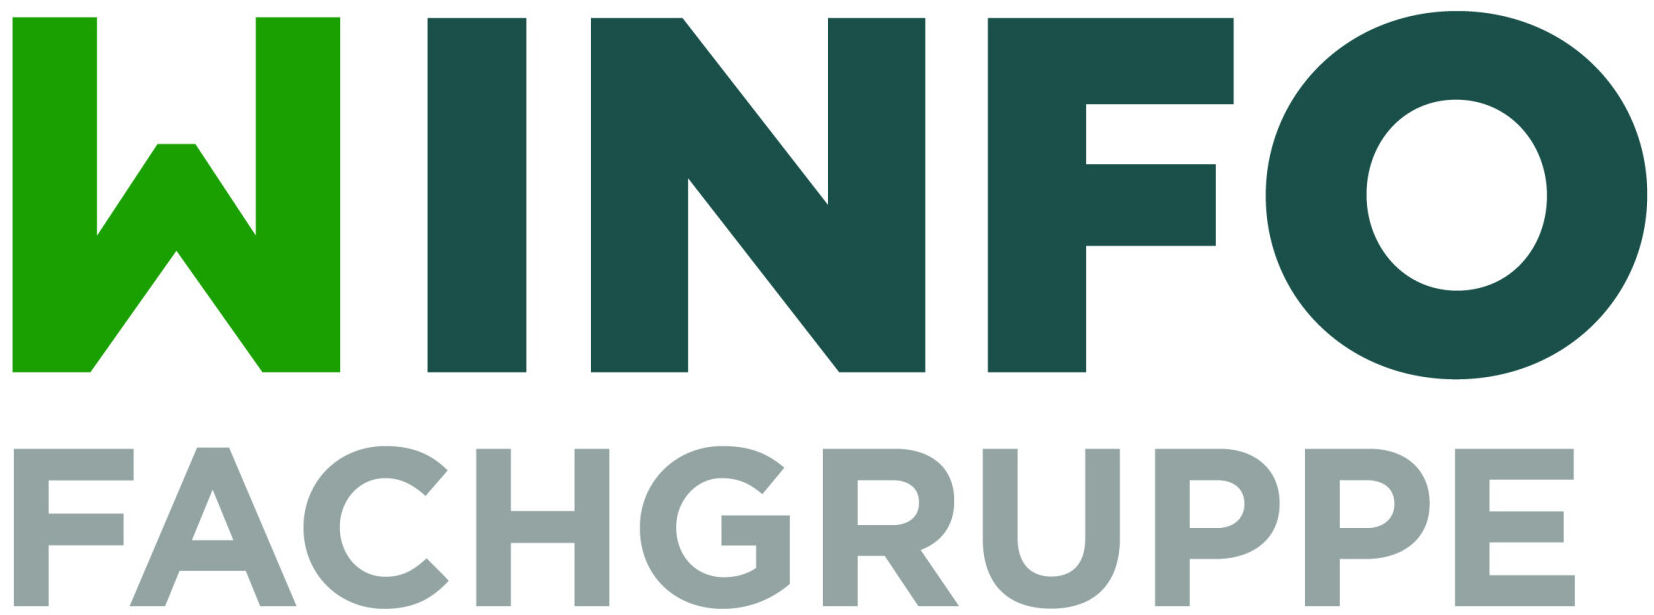 Fachgruppe Wirtschaftsinformatik Logo